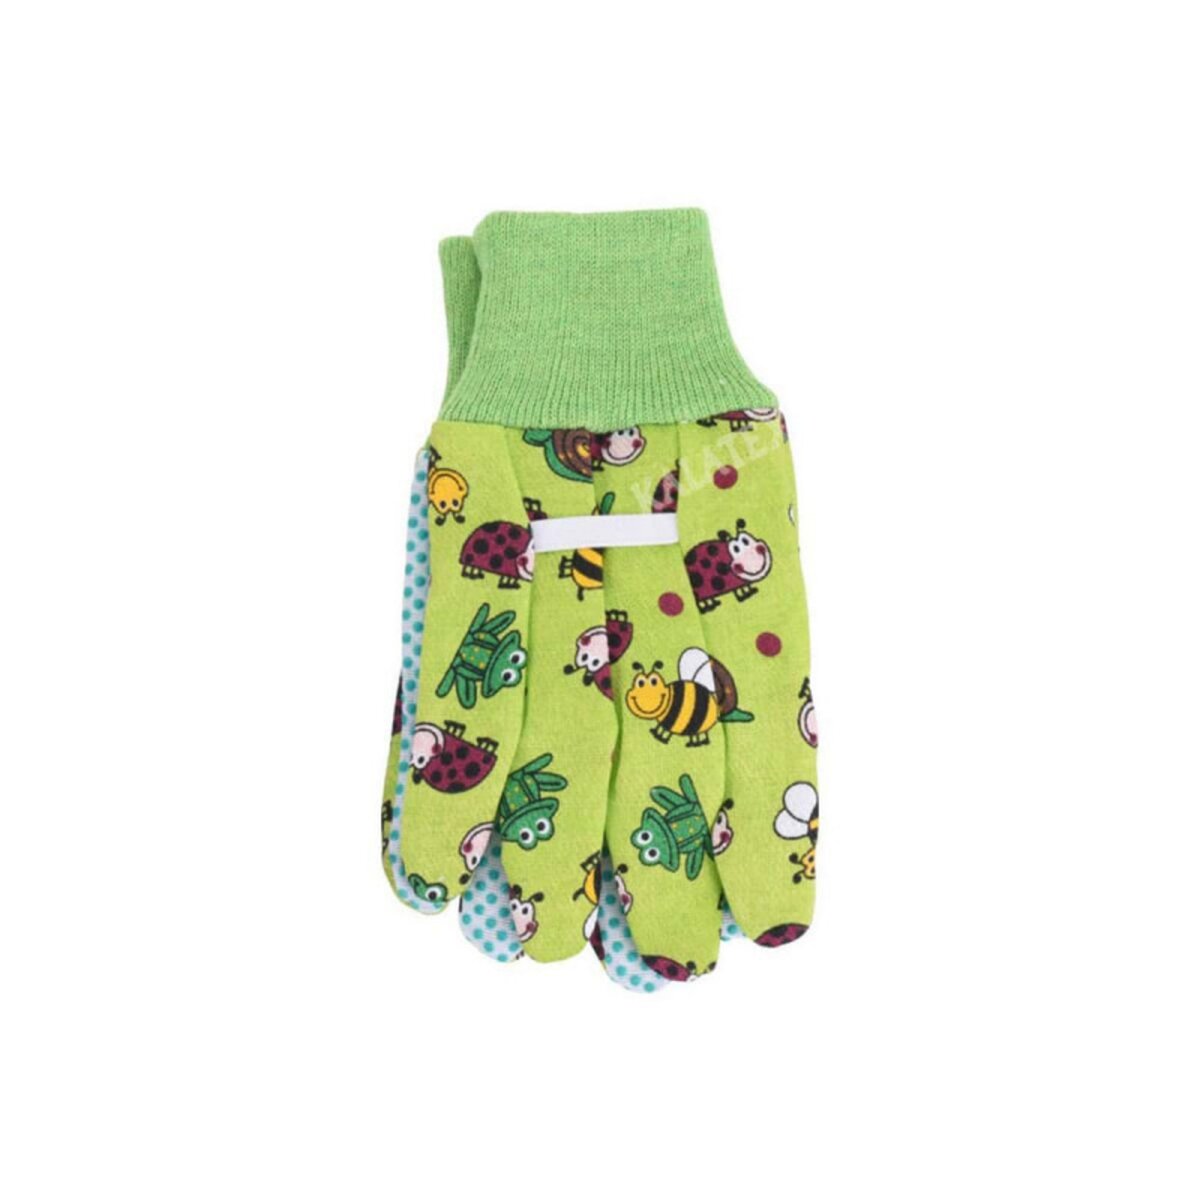  Gants de jardinage - Pour enfant - Taille unique 18cm - Vert